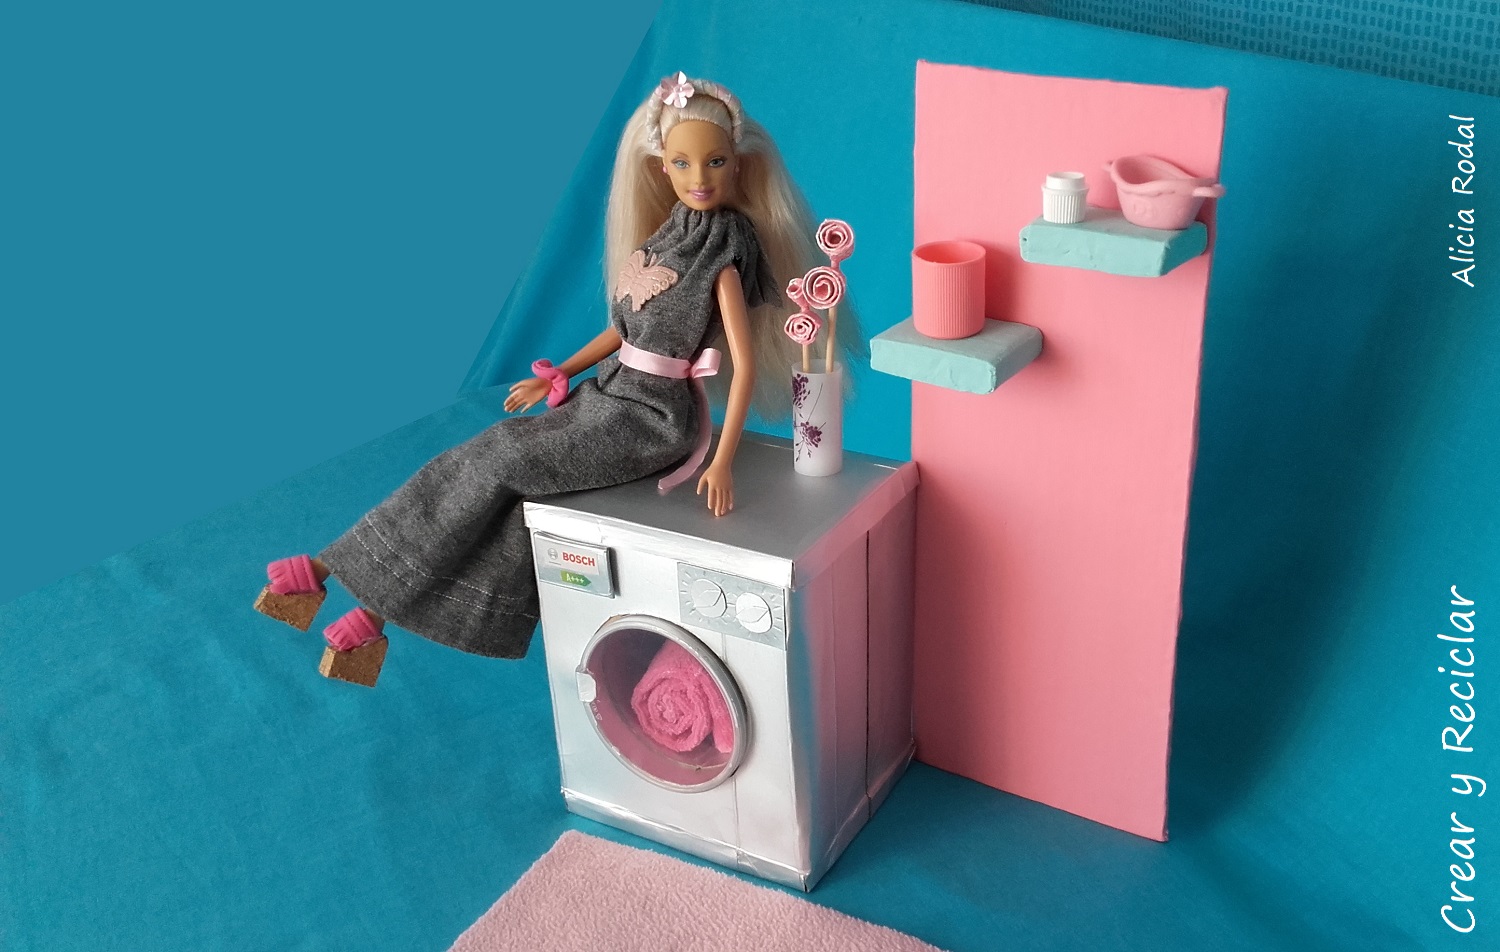 acerca de Beca no se dio cuenta Mini lavadora para muñecas ✓ Crear y Reciclar